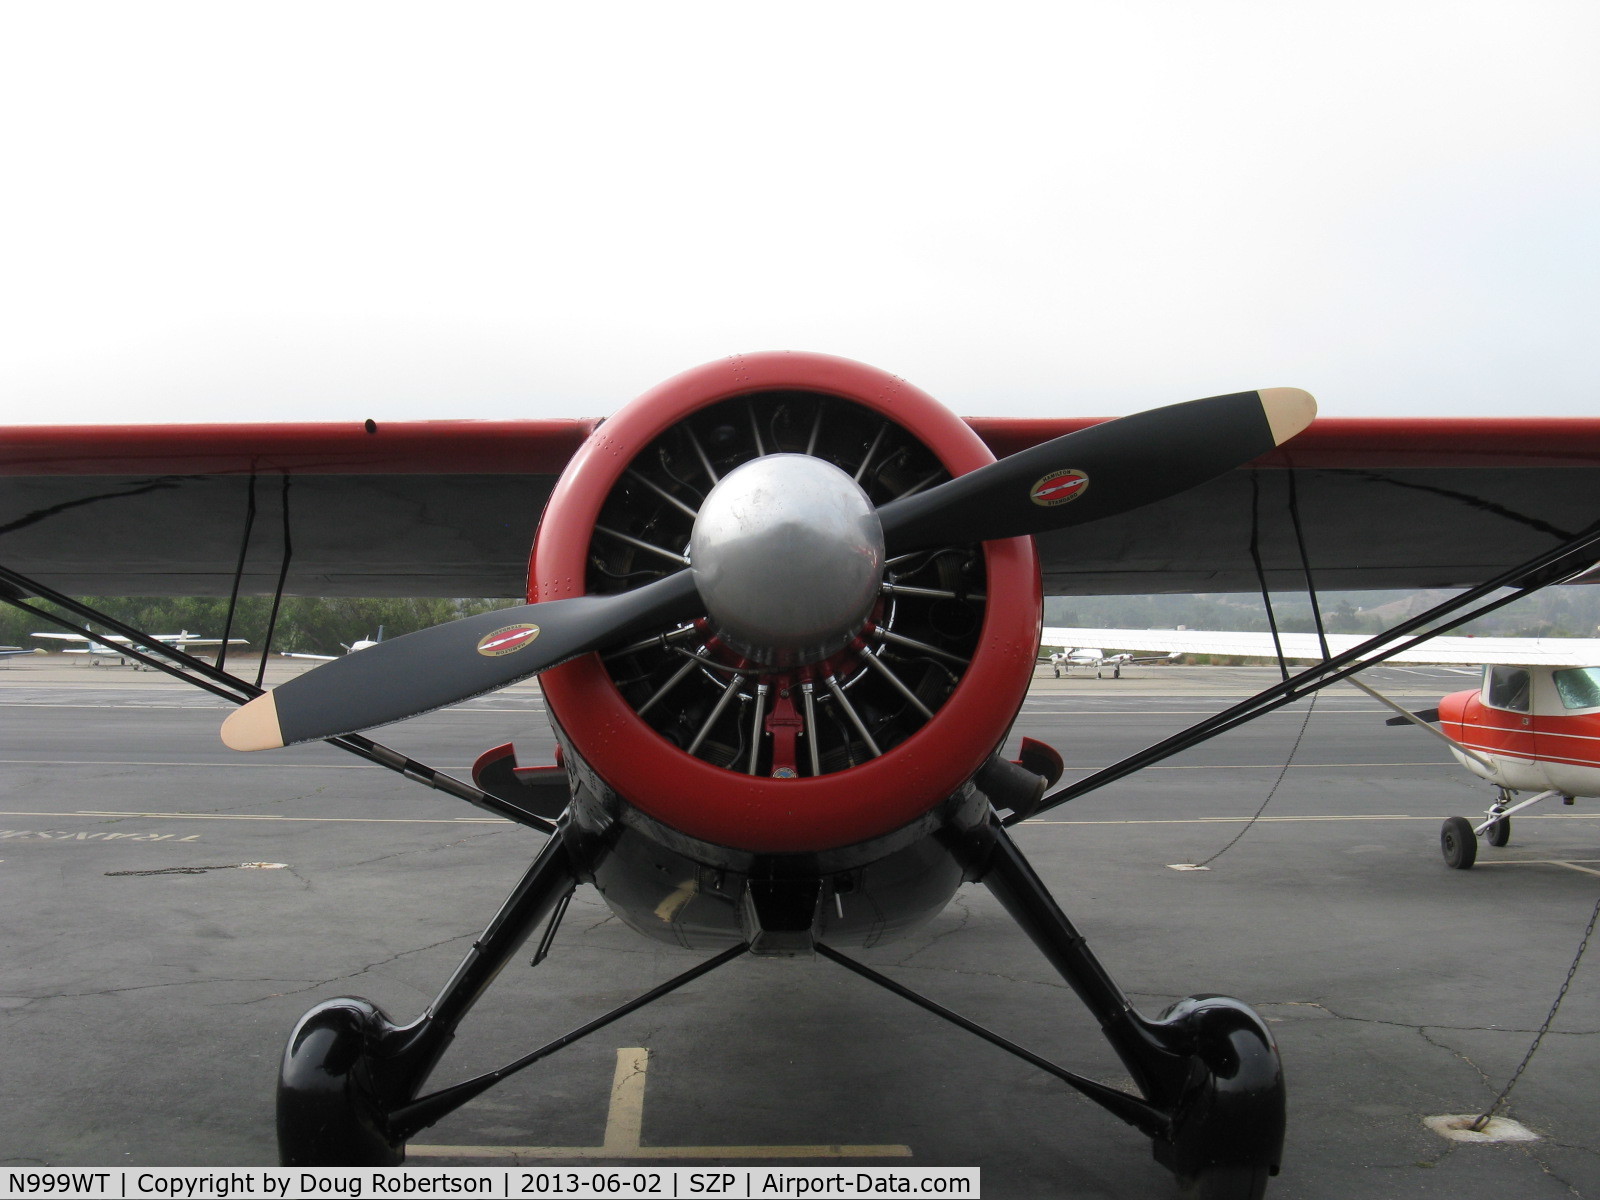 N999WT, 1943 Howard Aircraft DGA-15P C/N 29462, 1943 Howard DGA-15P 'Black Bear', P&W R-985 Wasp Jr. 450 Hp, large spinner, prop